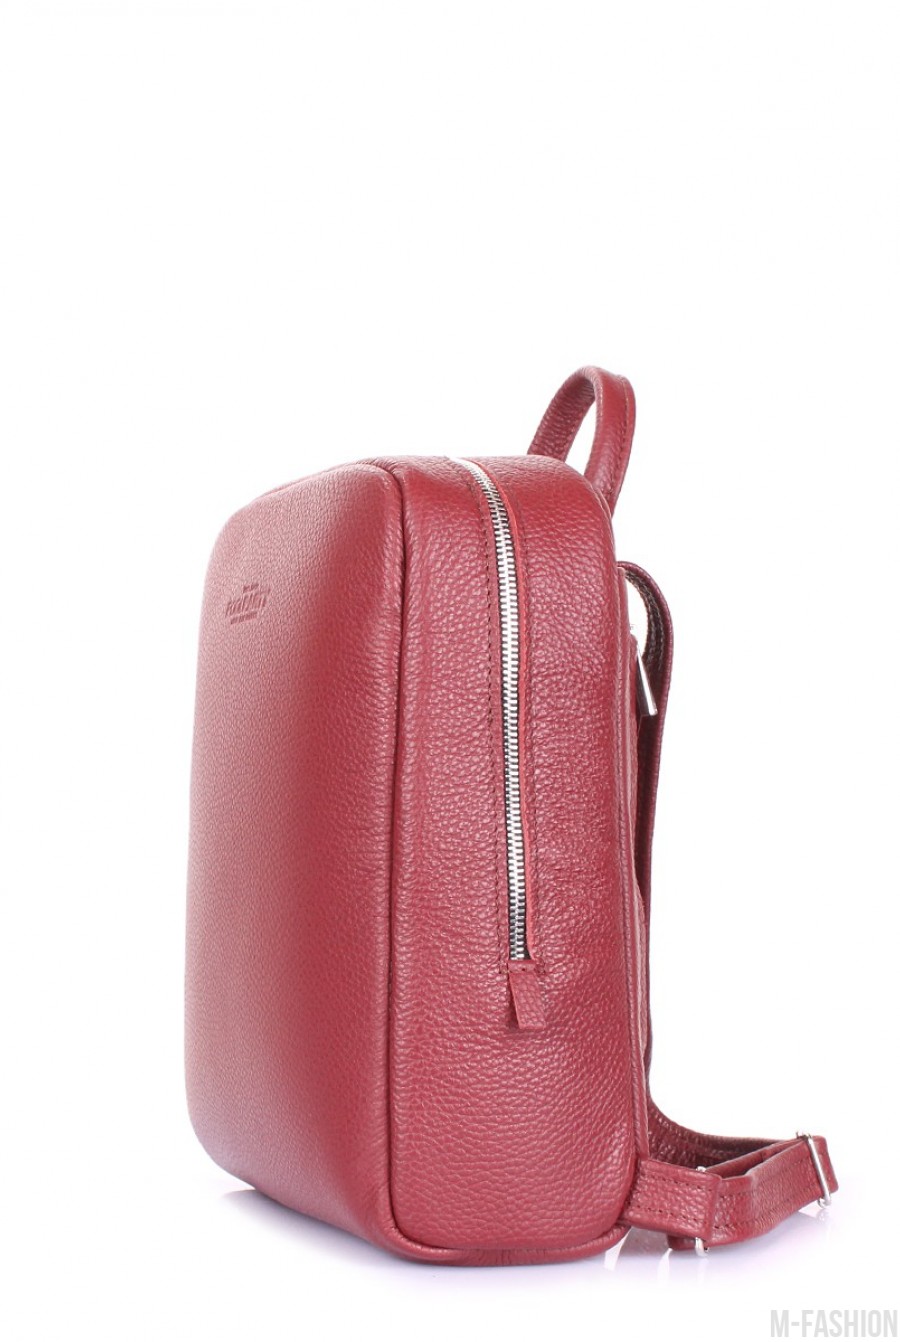 Оригинальный и стильный кожаный рюкзак- Фото 2